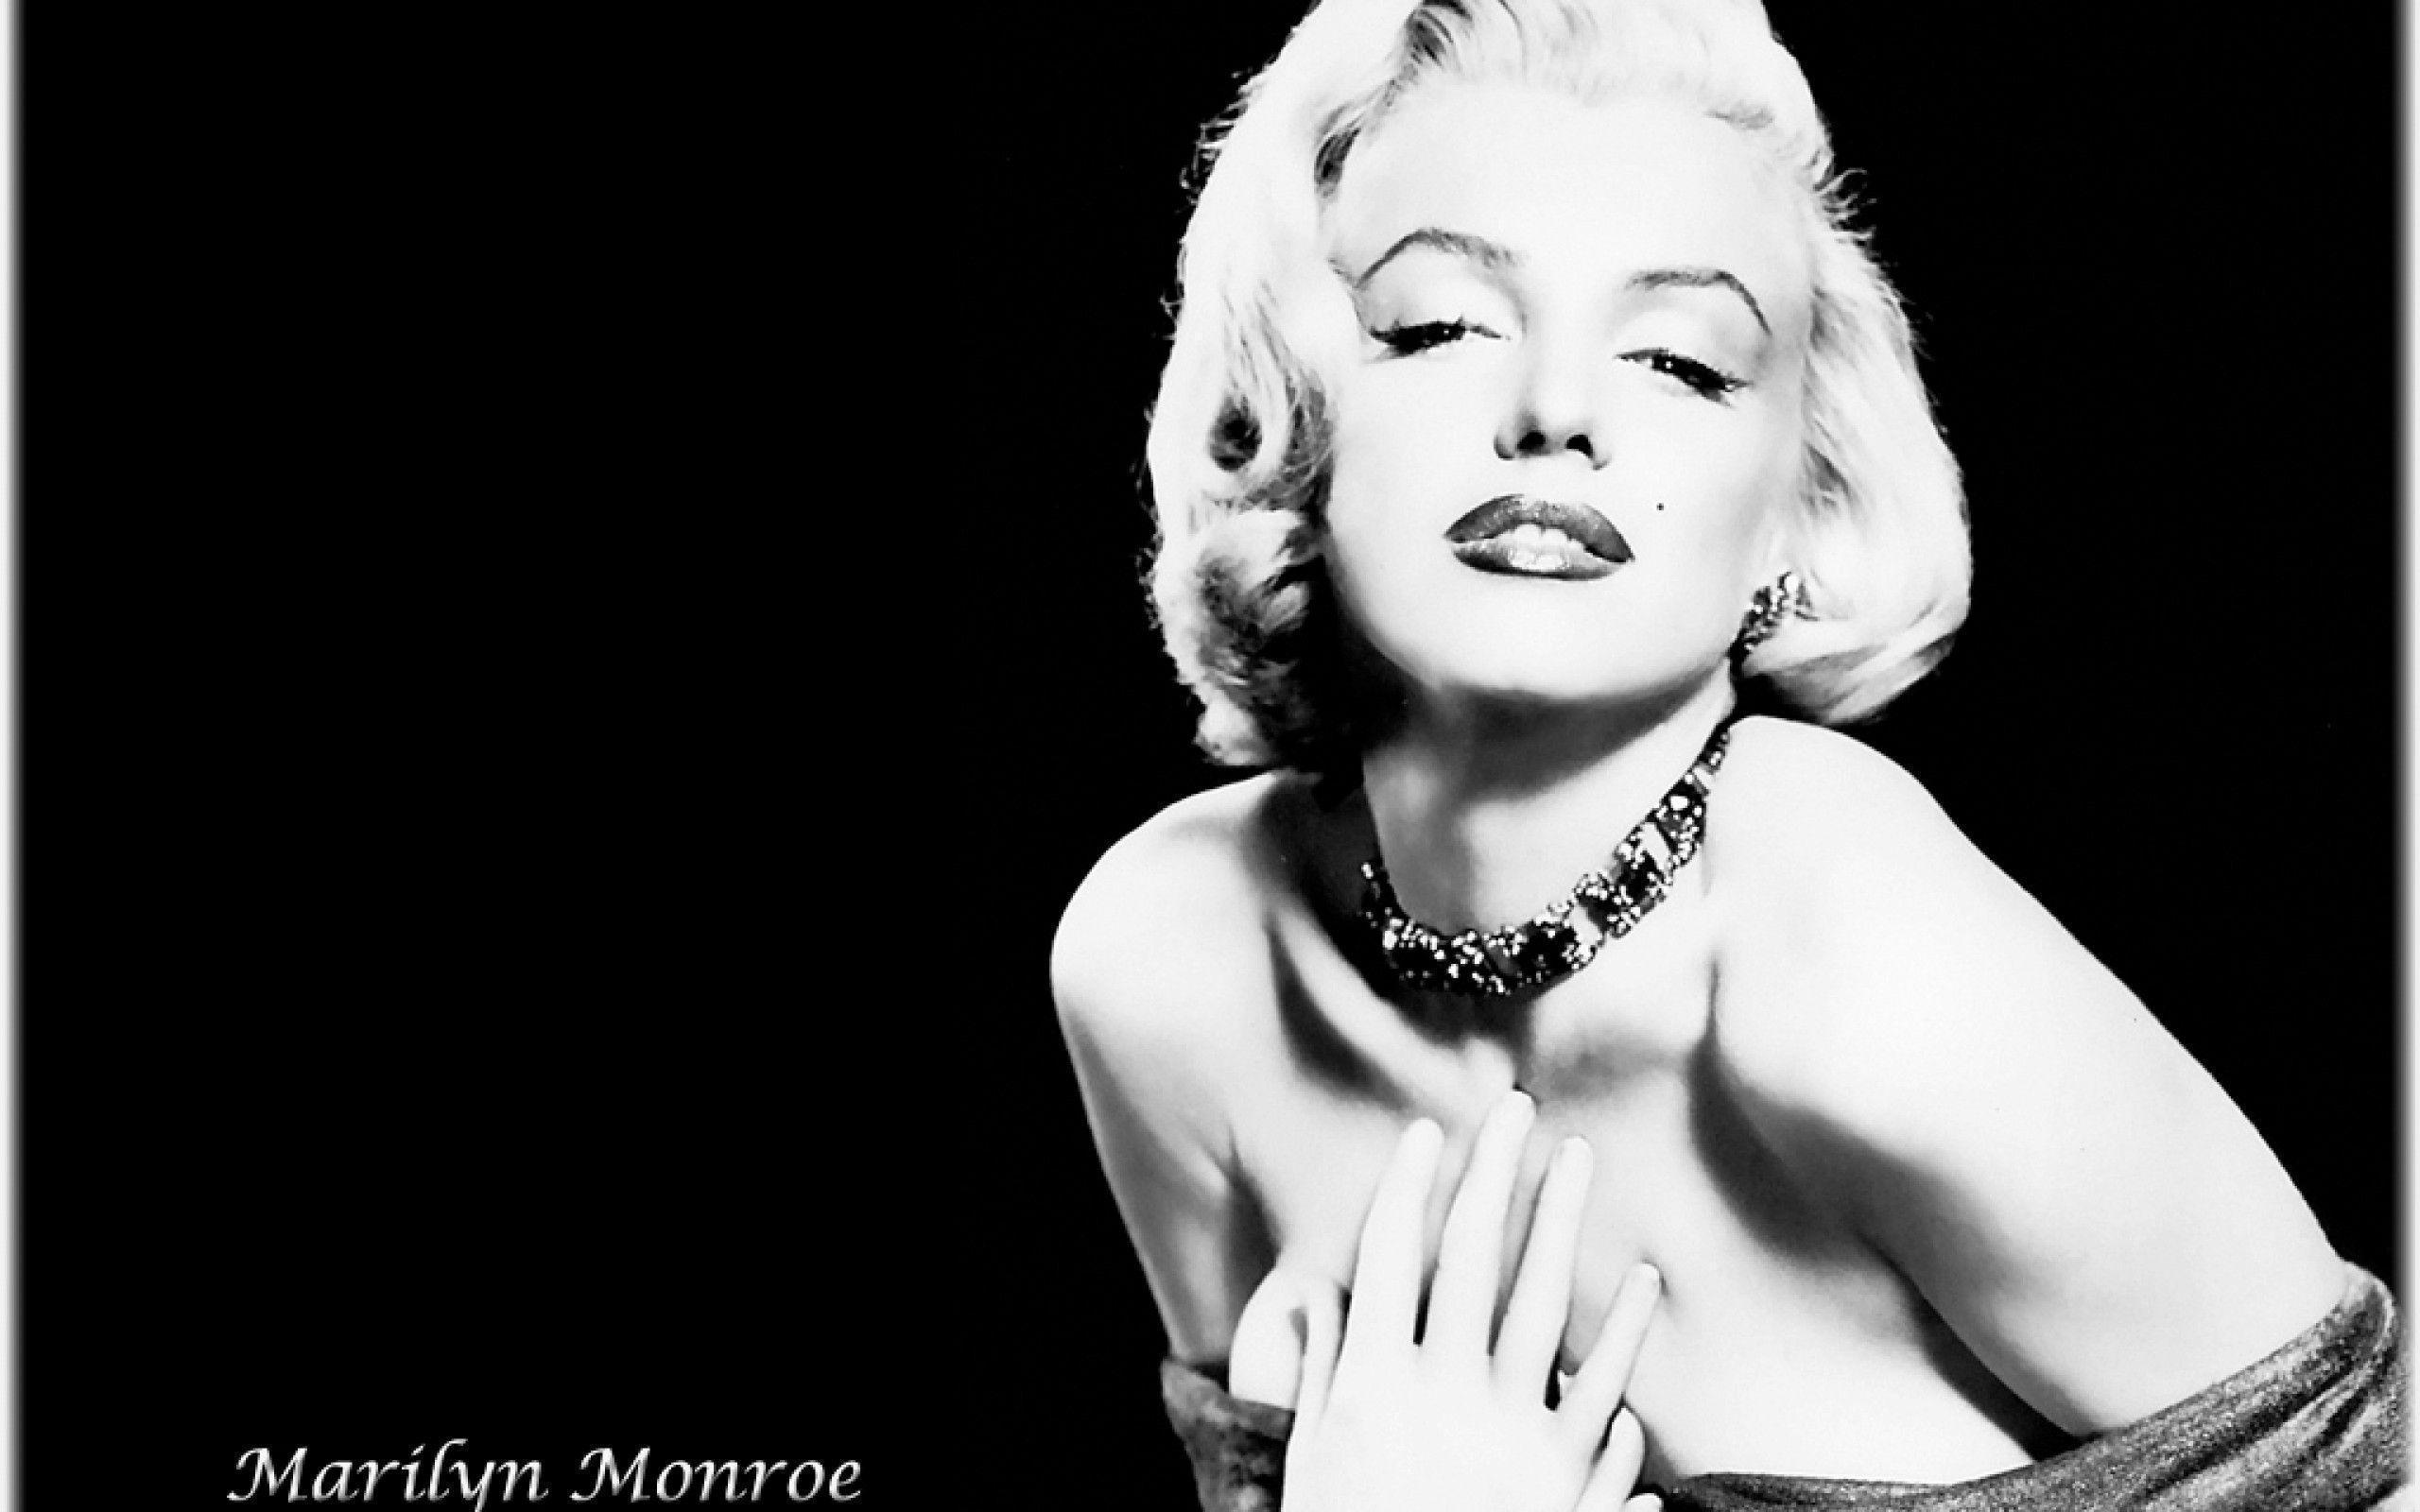 Wallpaper For > Tumblr Background Marilyn Monroe